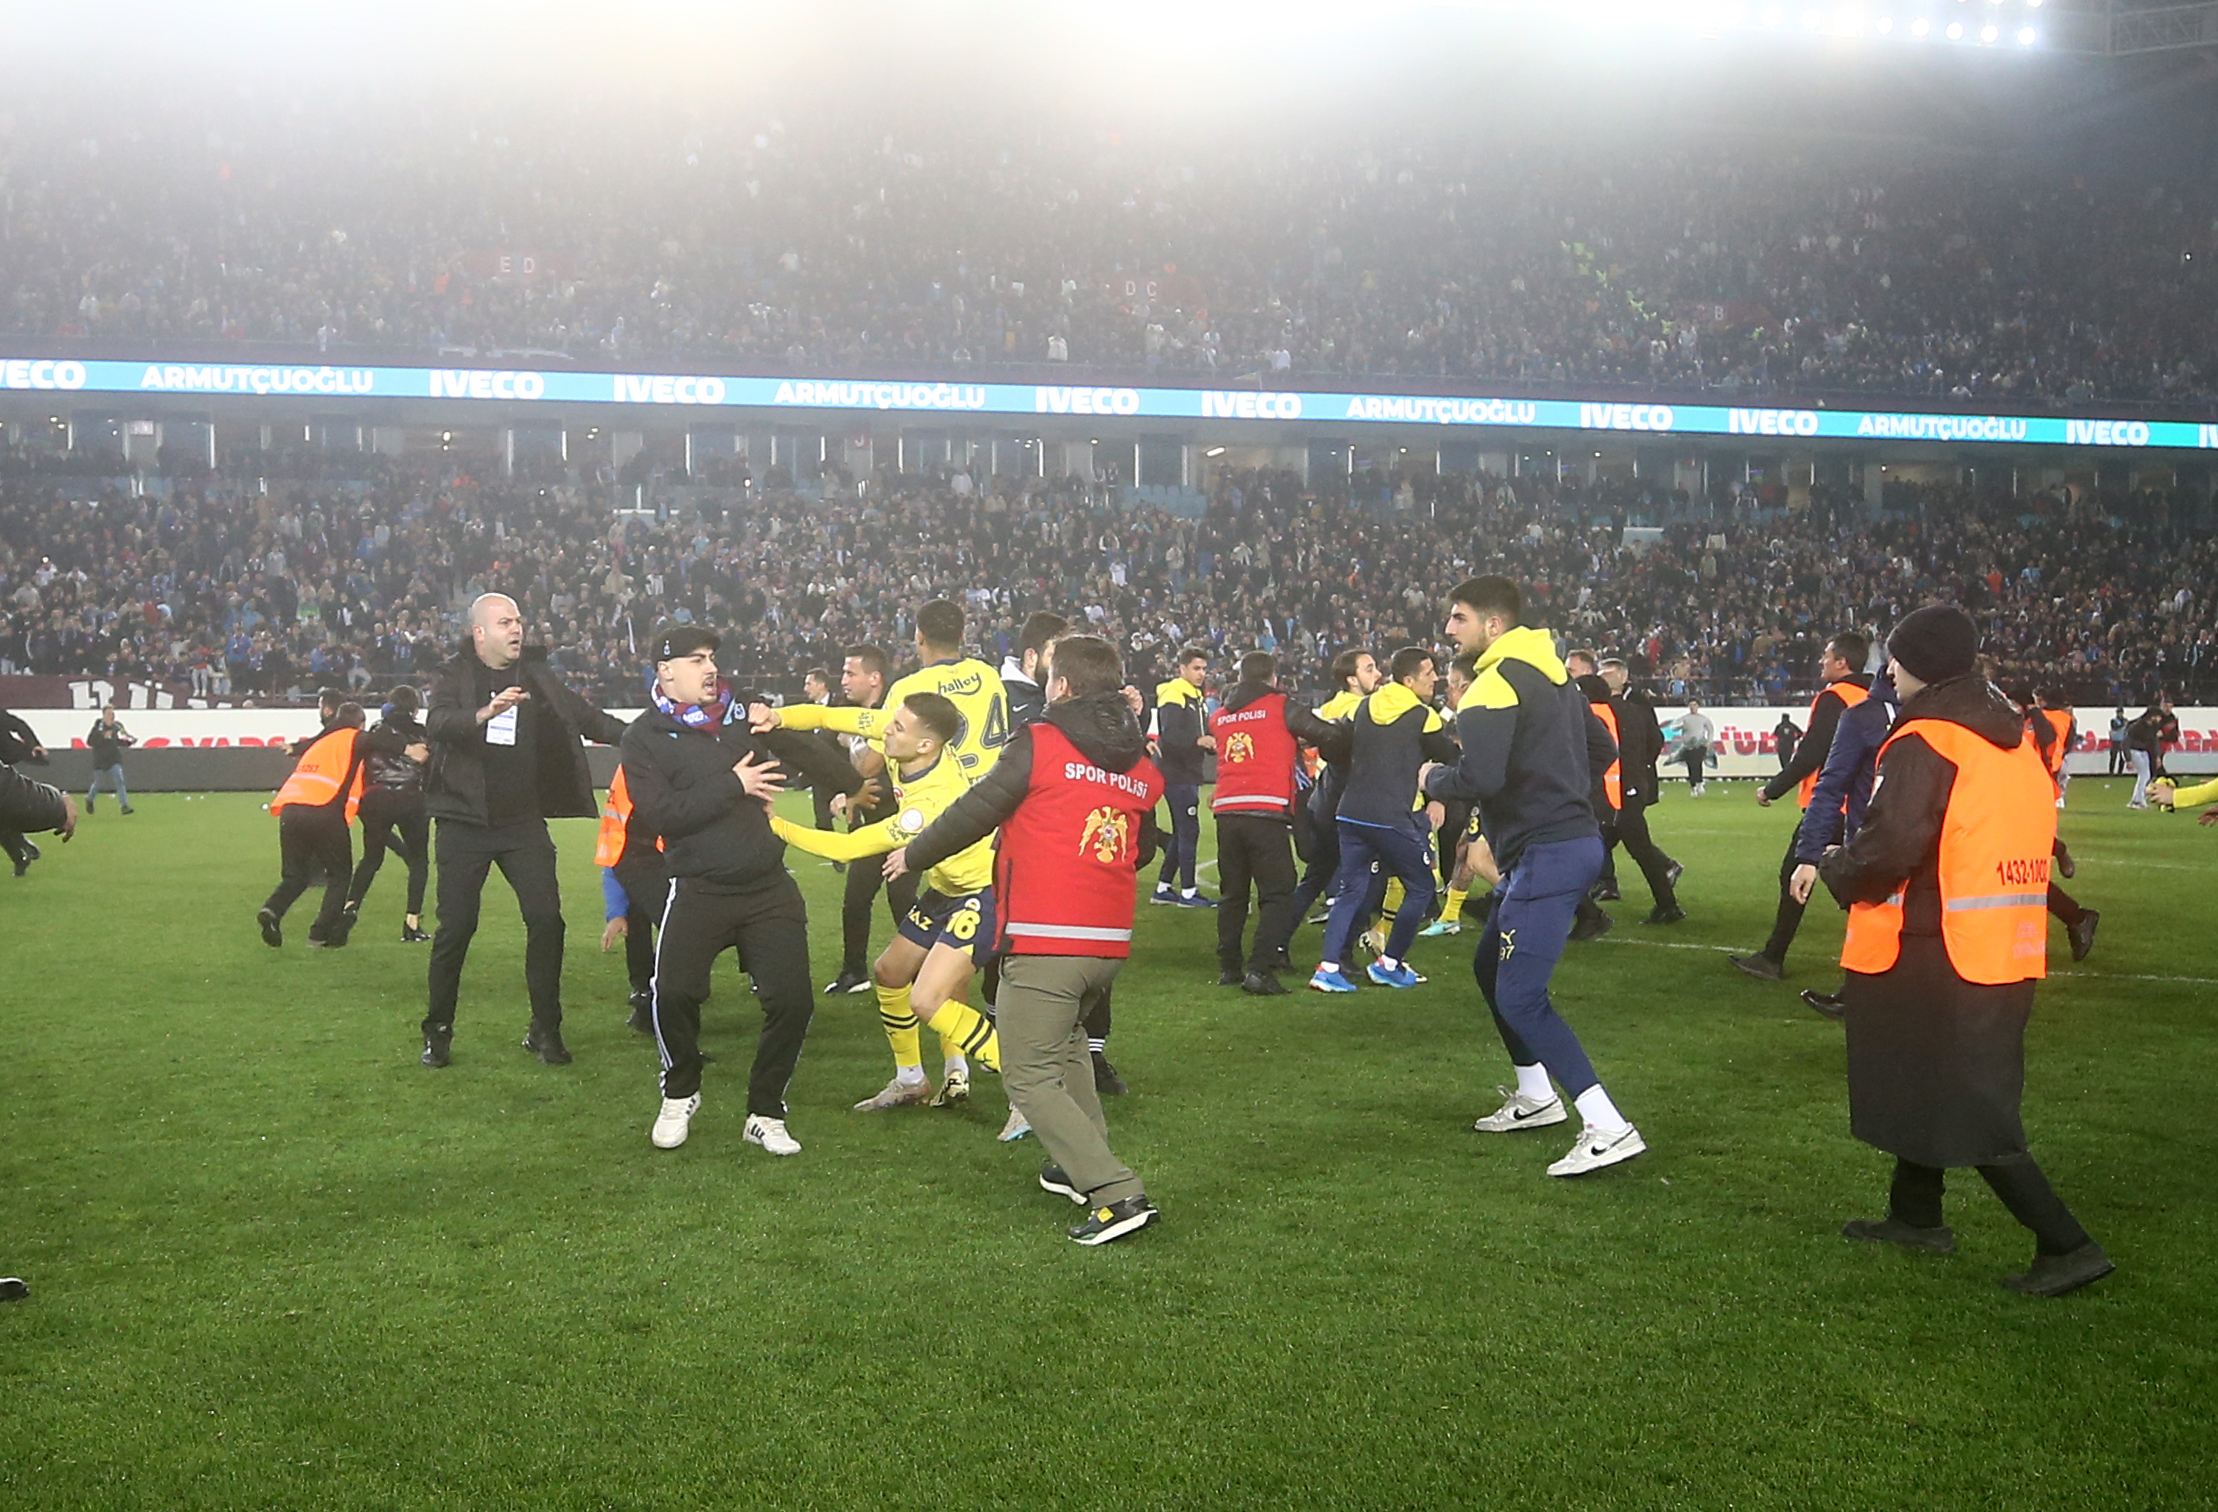 "Fenerbahçeli futbolcular değil maç cezası, bir dakika bile ceza almamalı"